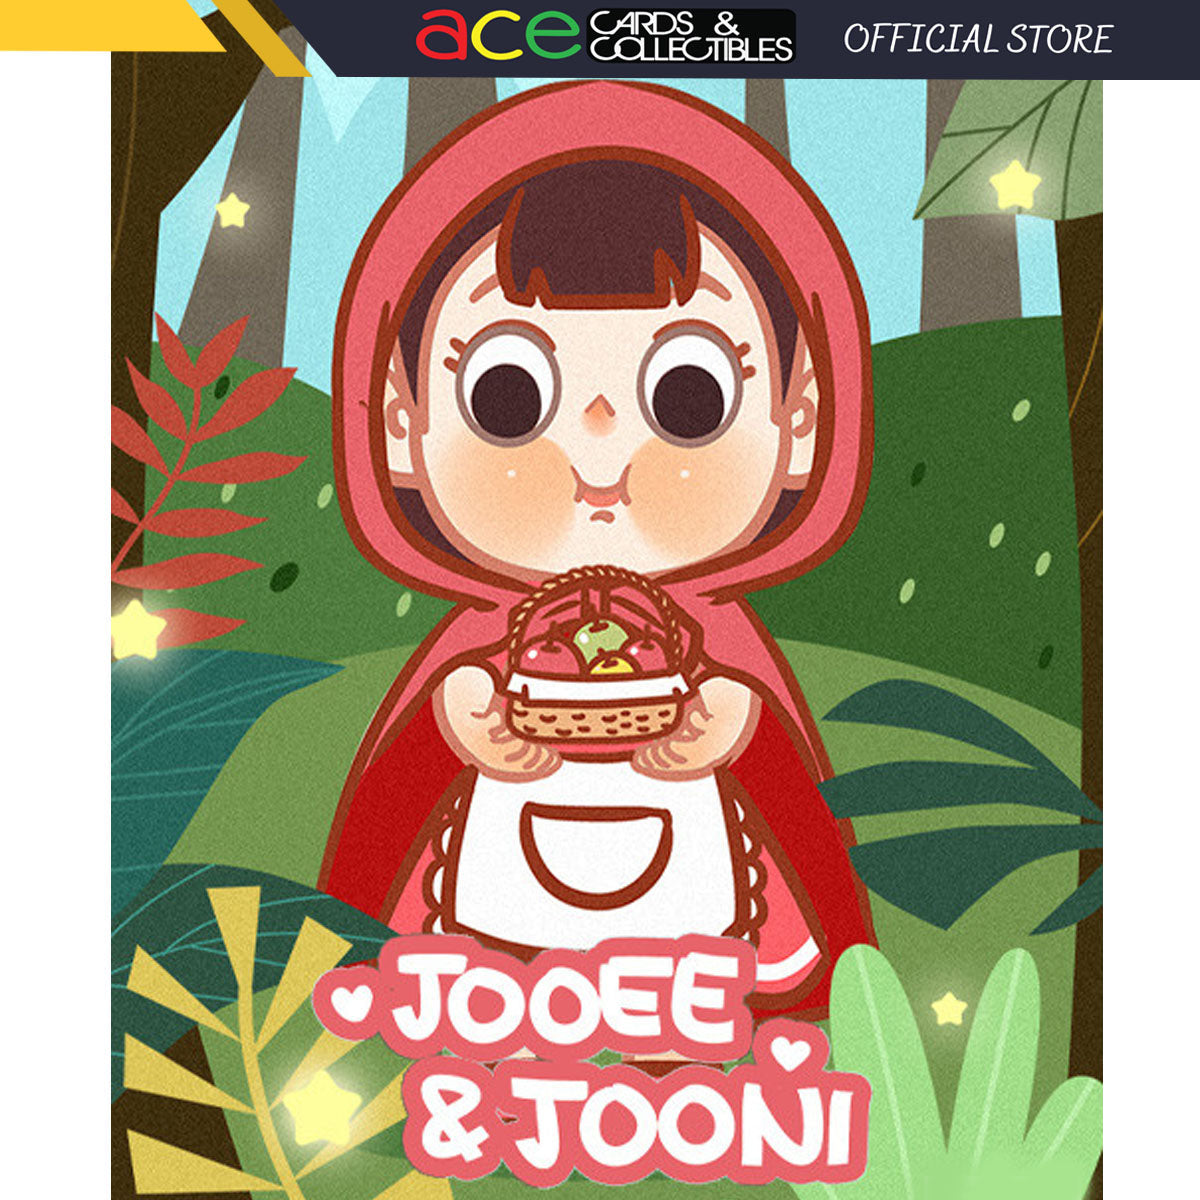 林川一目 x JOOEE & JOONI 森林童话 -徽章系列-Single Box (Random)-林川一目-Ace Cards & Collectibles